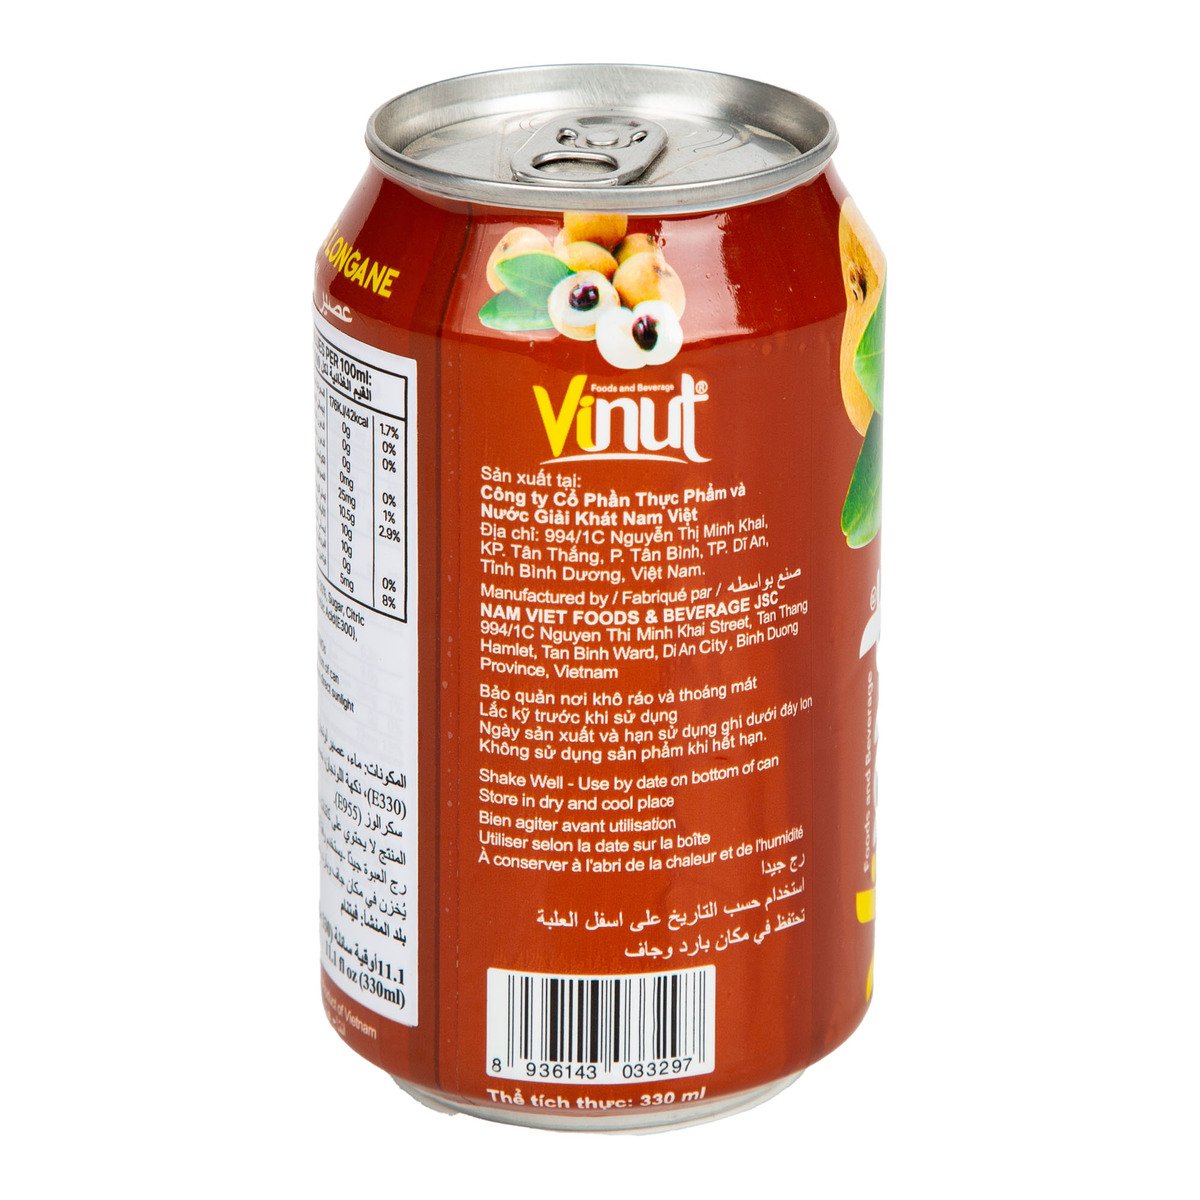 Vinut Longan Juice Drink 330 ml